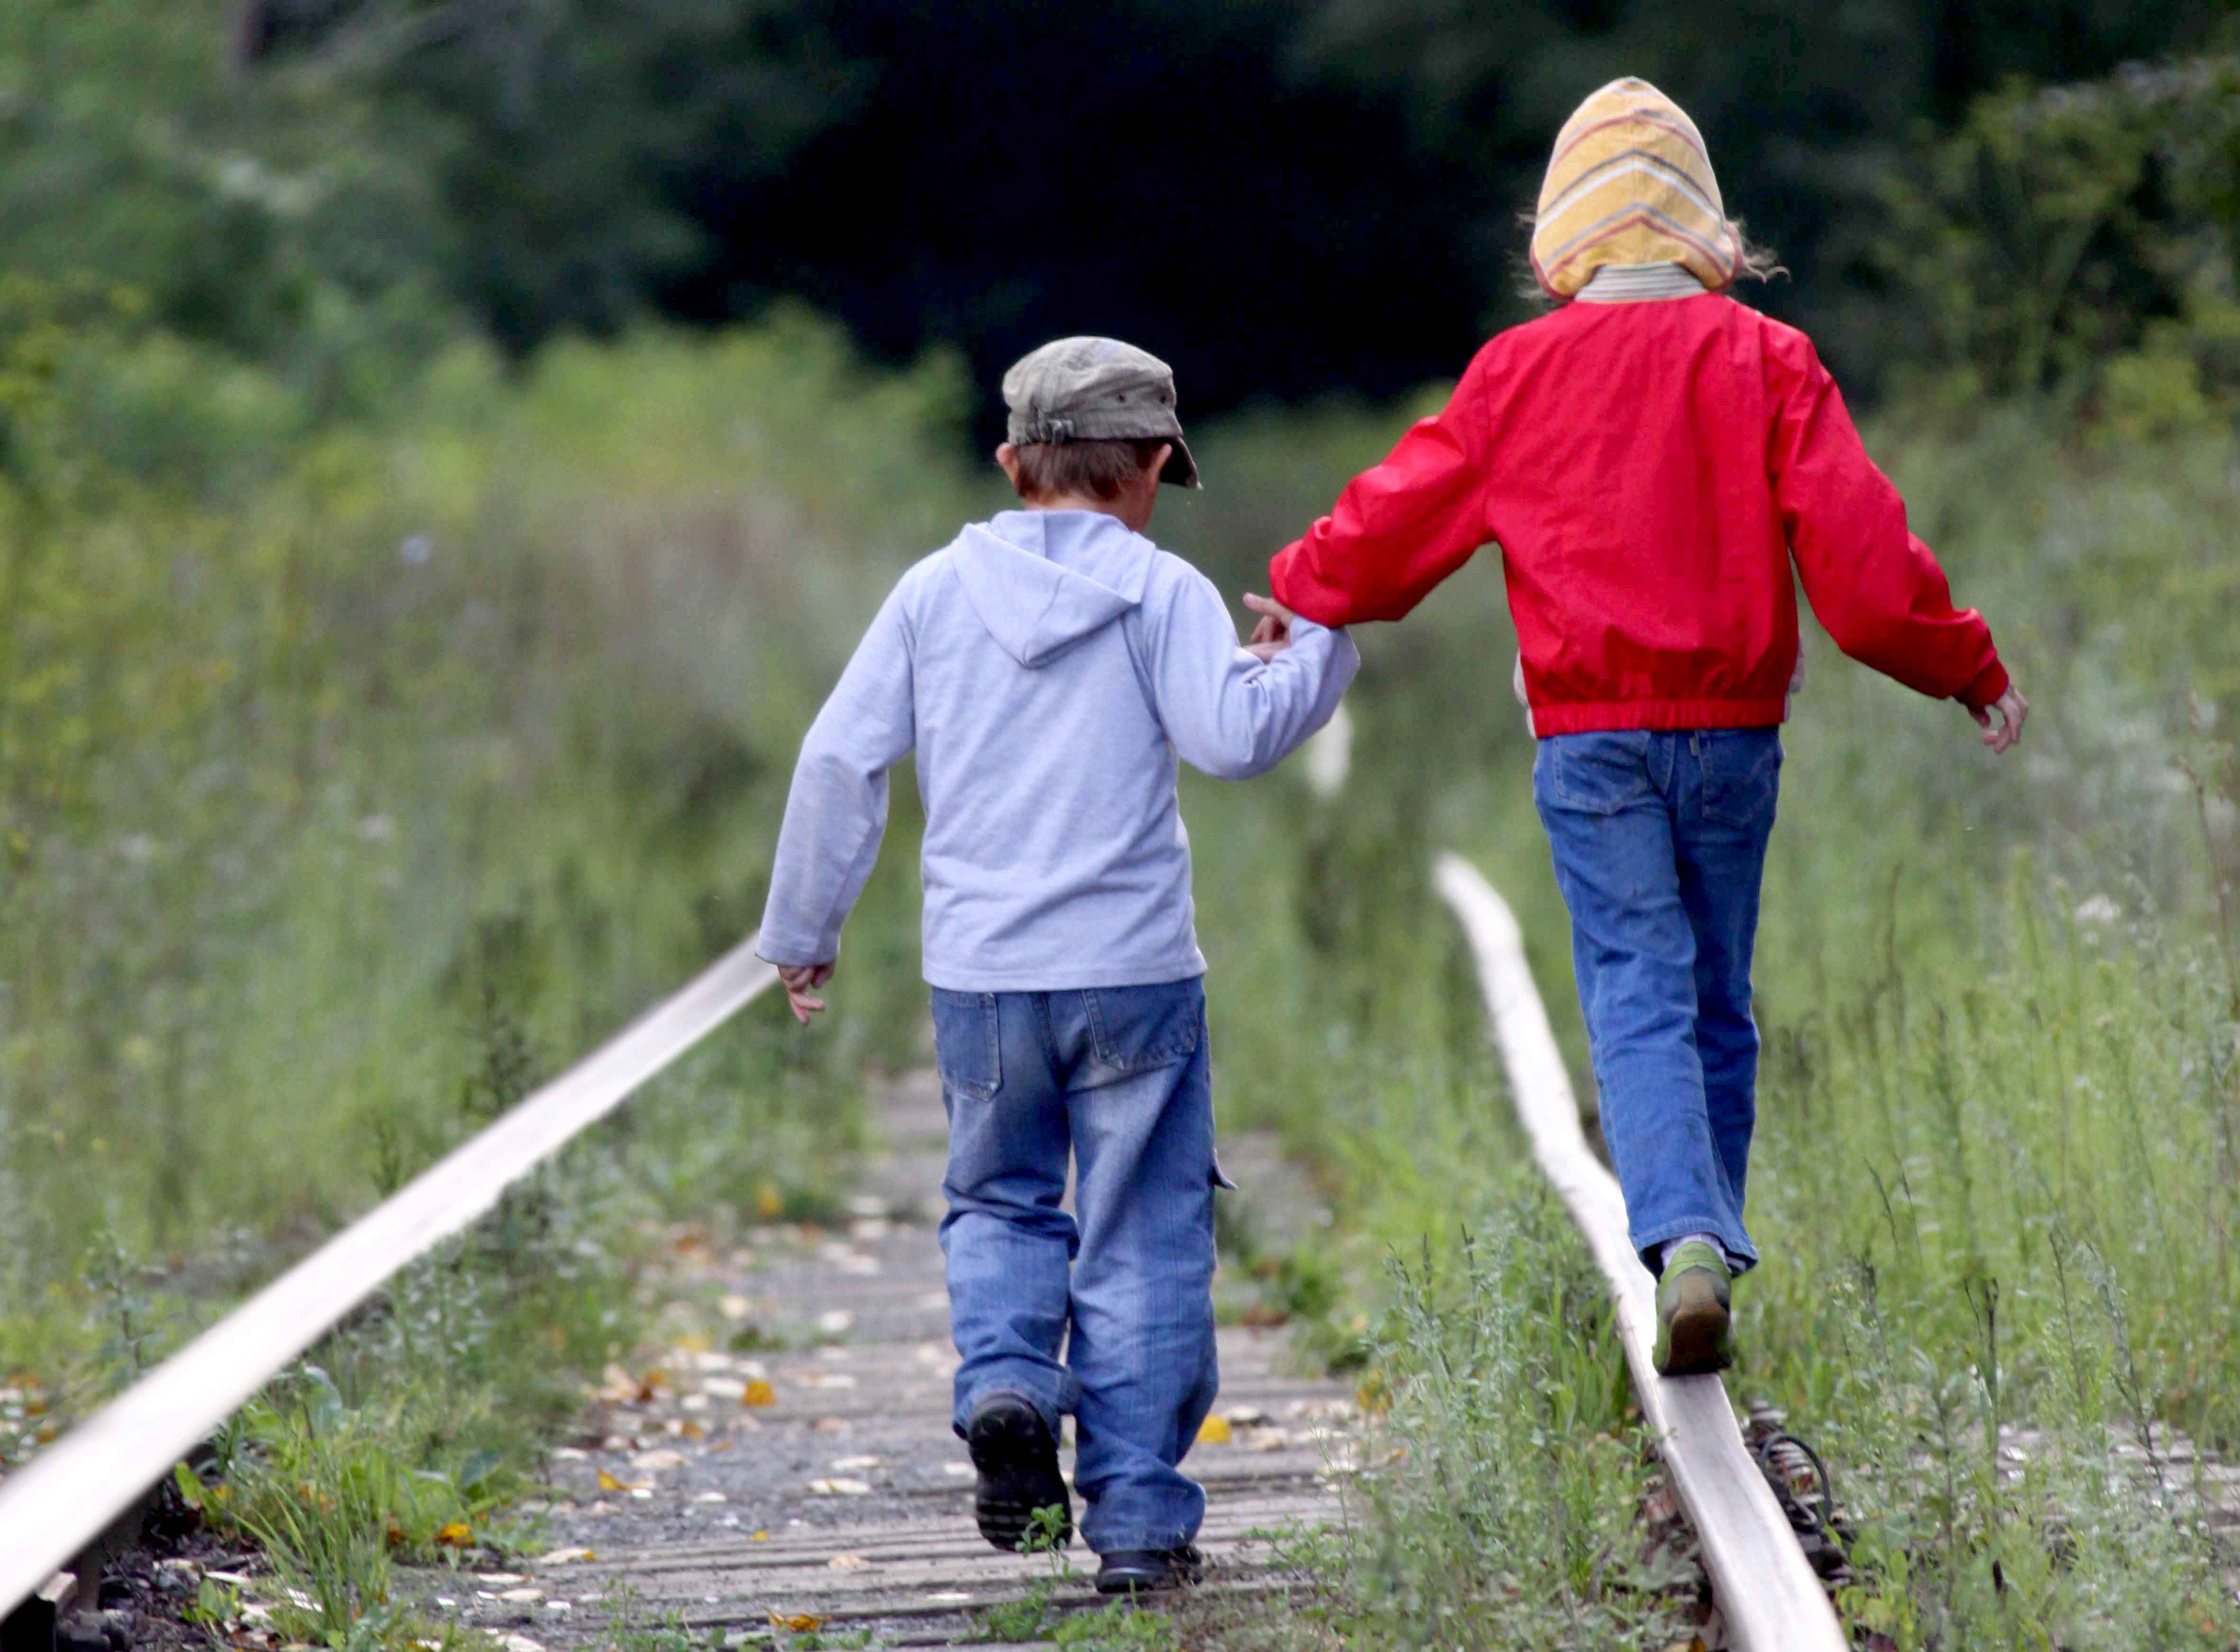 Ситуации ребенок и риск. Железная дорога для детей. Дети на ЖД путях. Дети идут по дороге. Детский травматизм на железной дороге.